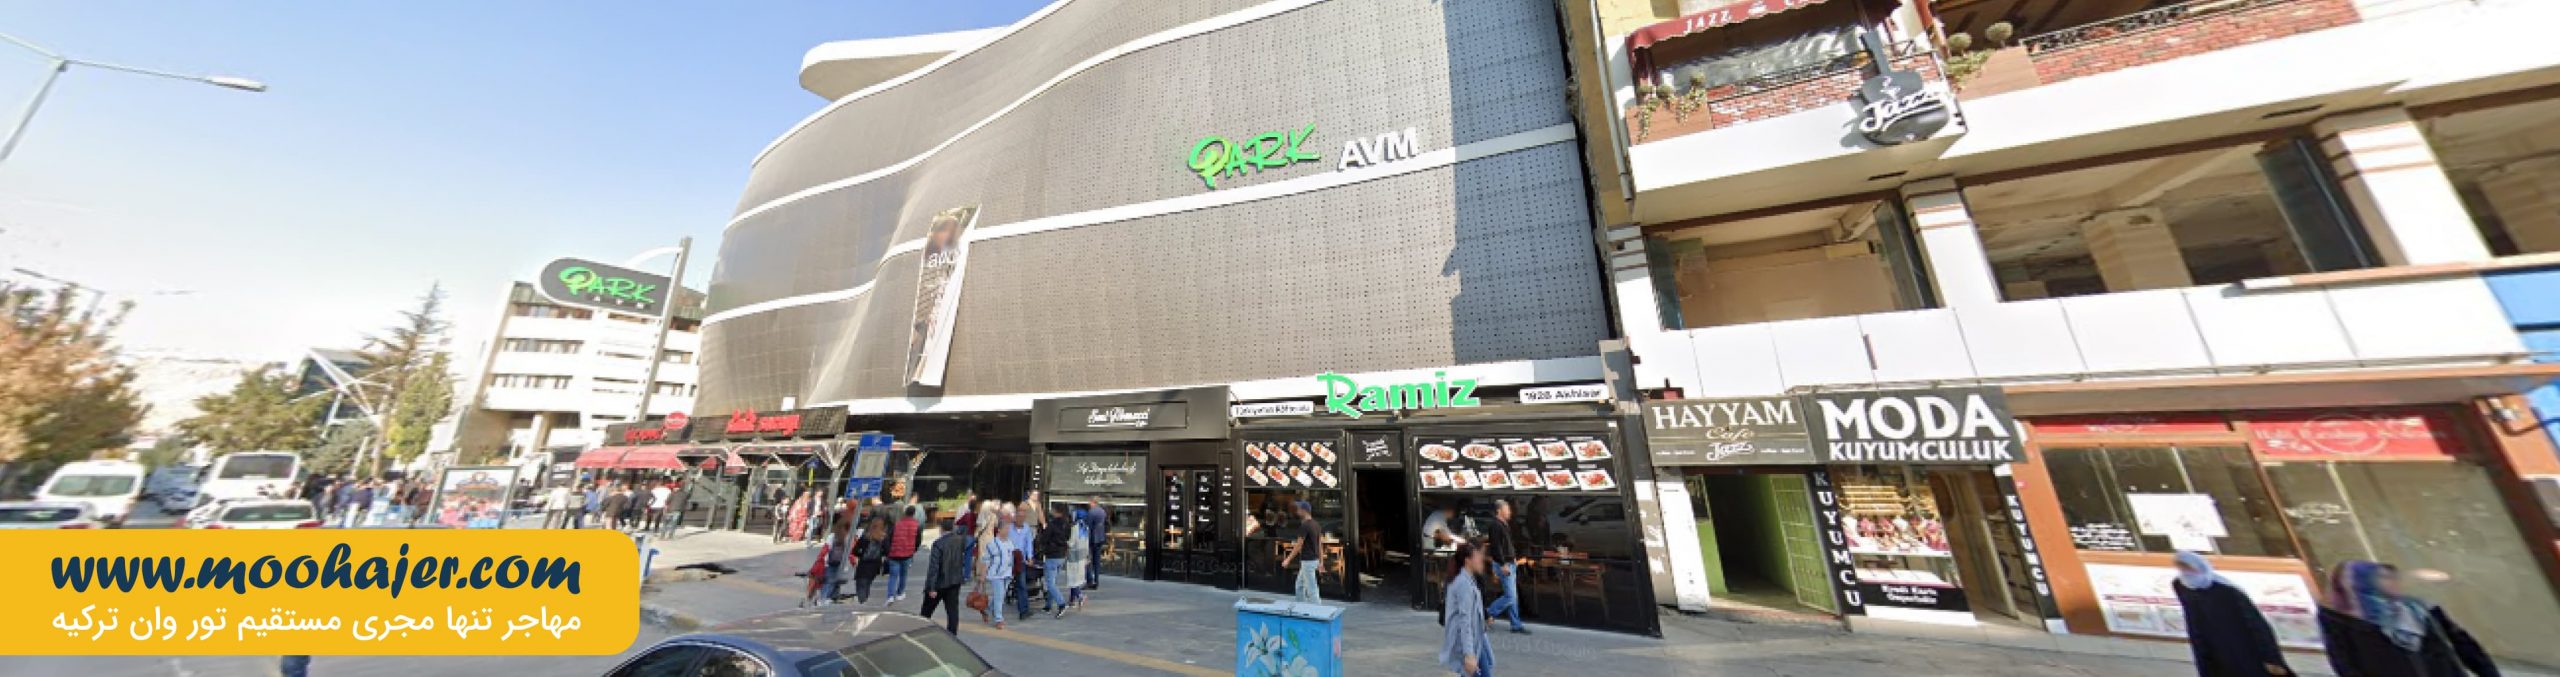 مرکز خرید پارک اوم ( پارک ای وی ام ) | park AVM | مهاجر سیر ایرانیان